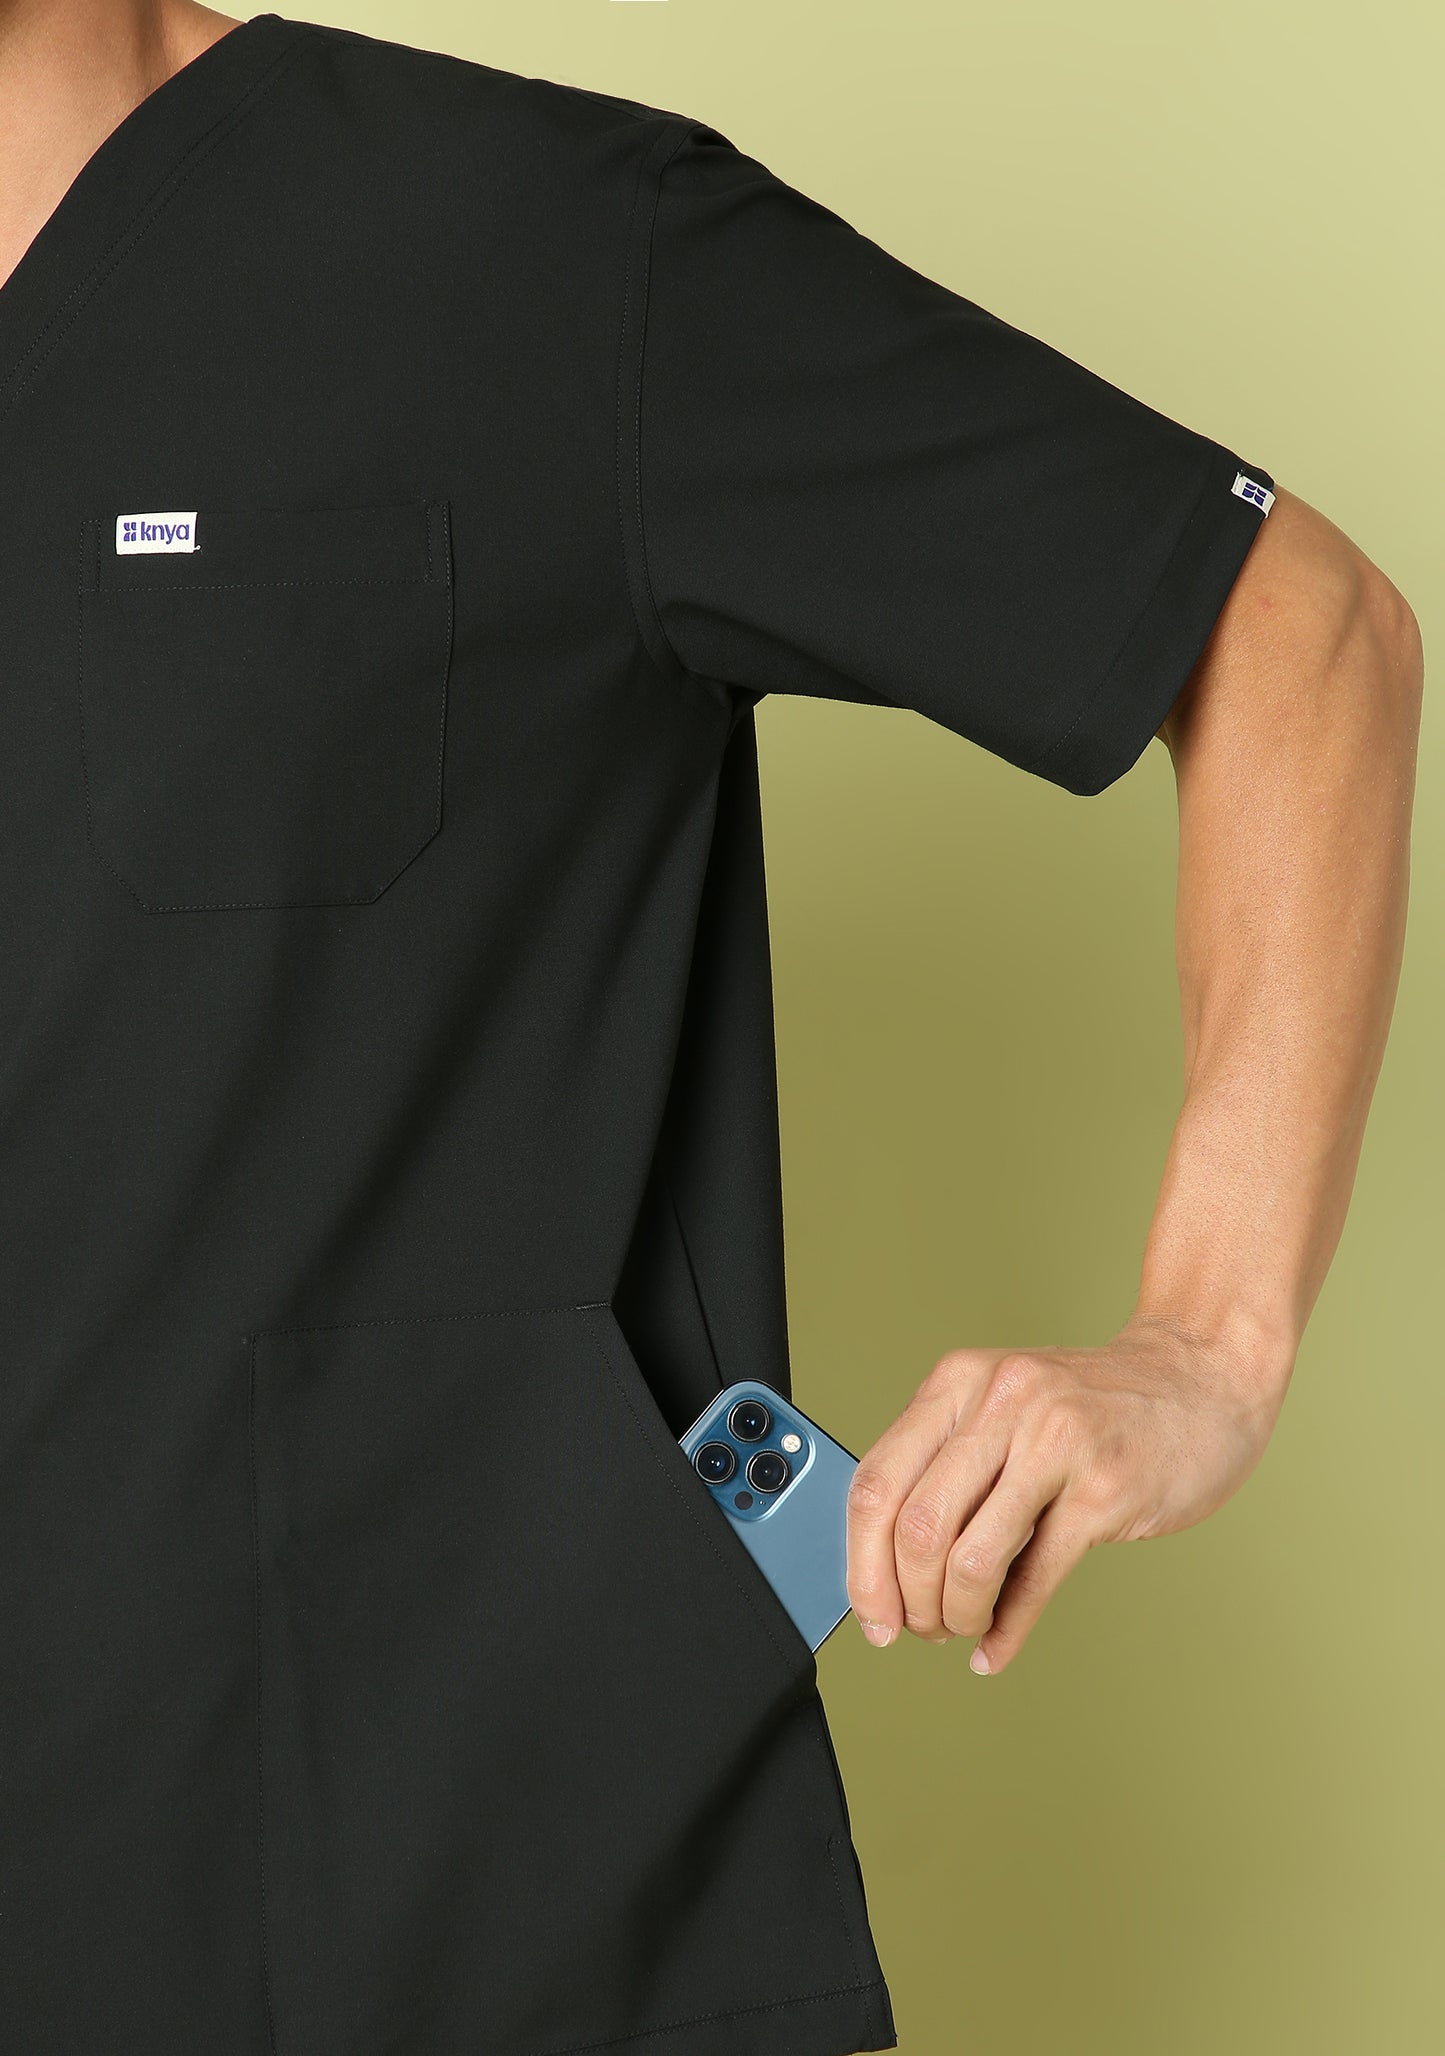 Ecoflex Men's 5 Pocket (Black) Scrub